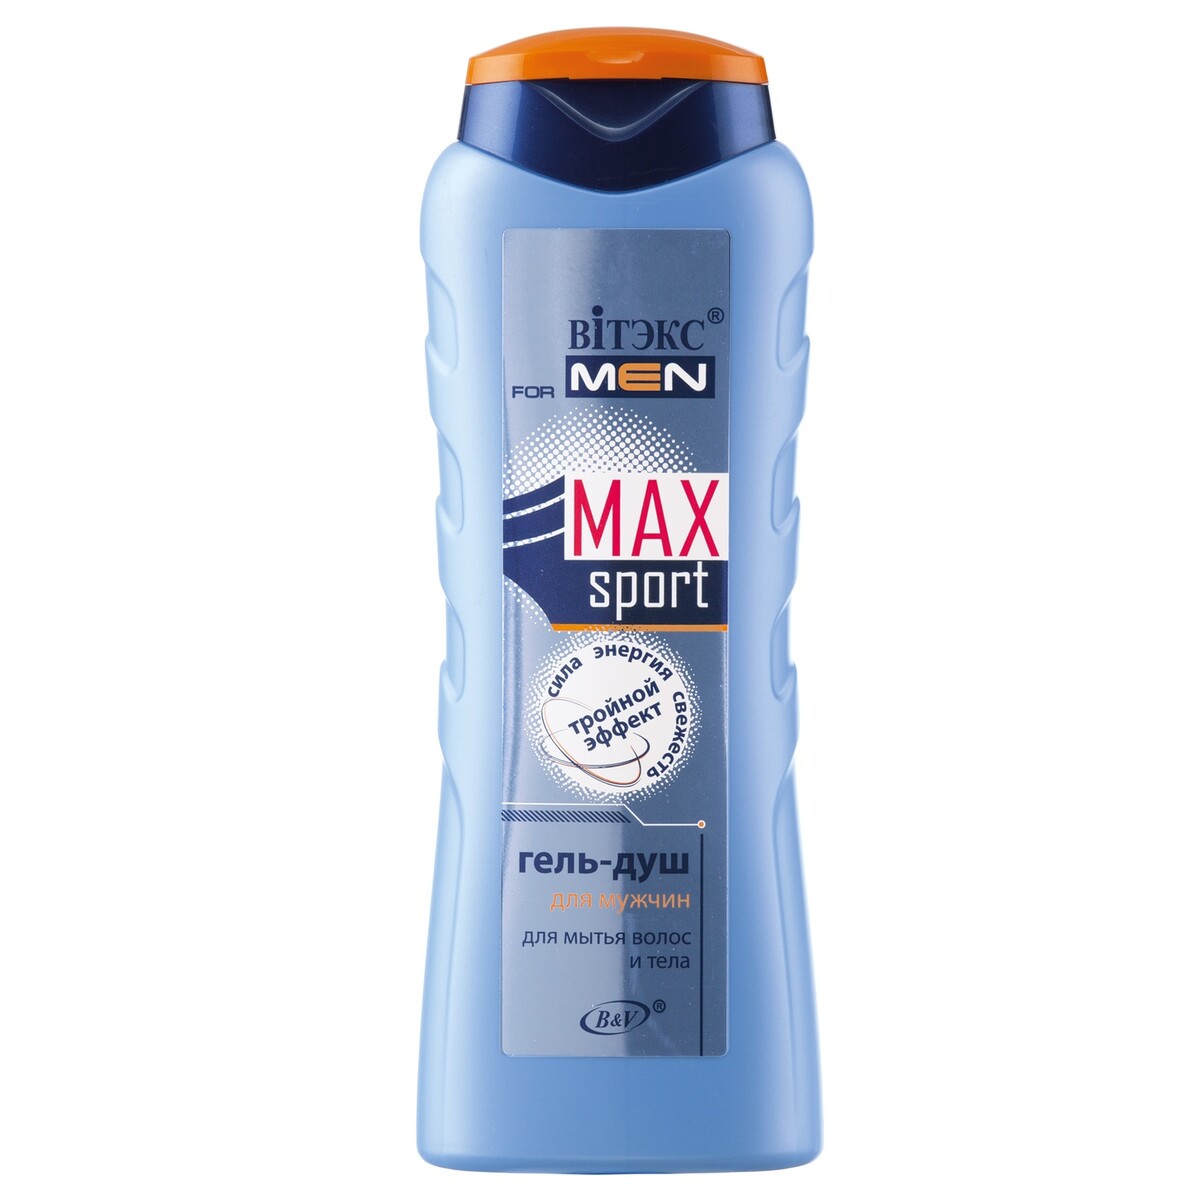 Гель-душ for men max sport для мытья